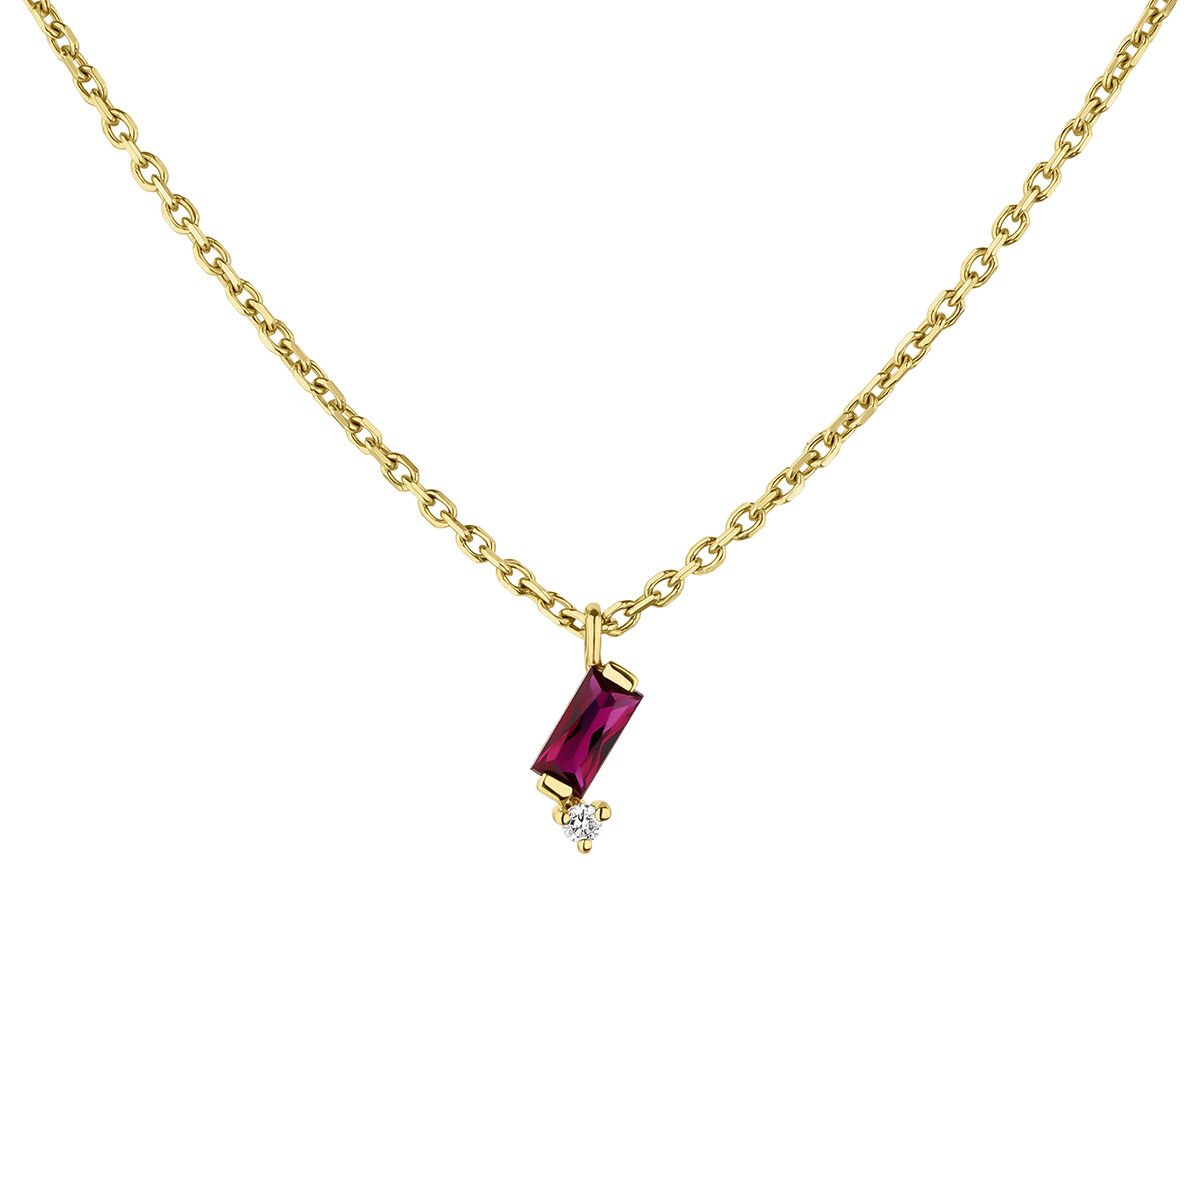 Collier avec pendentif rubis or 9 carats, J04985-02-RU, hi-res